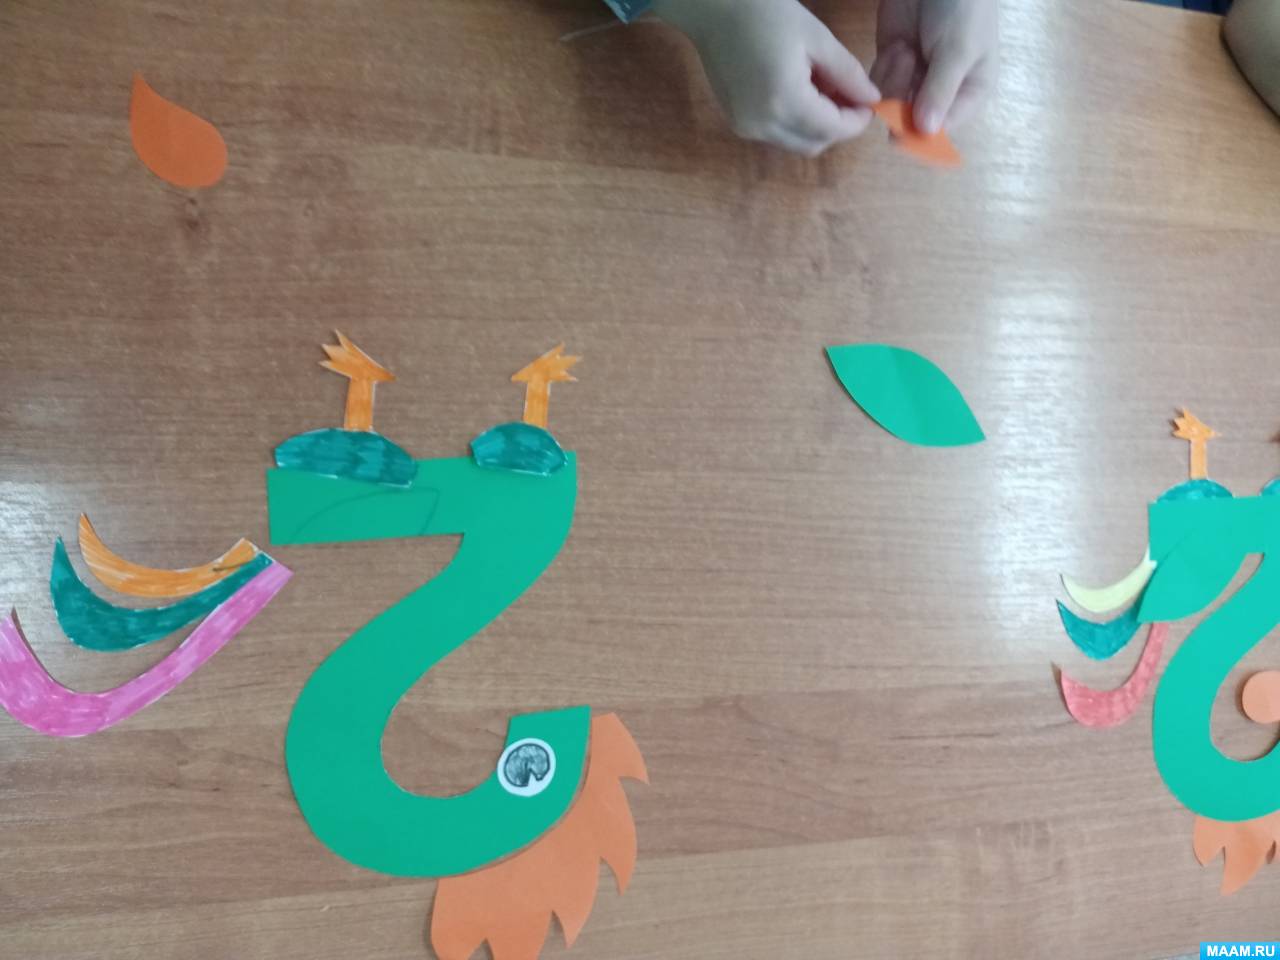 Математические занятия с трехлетним малышом